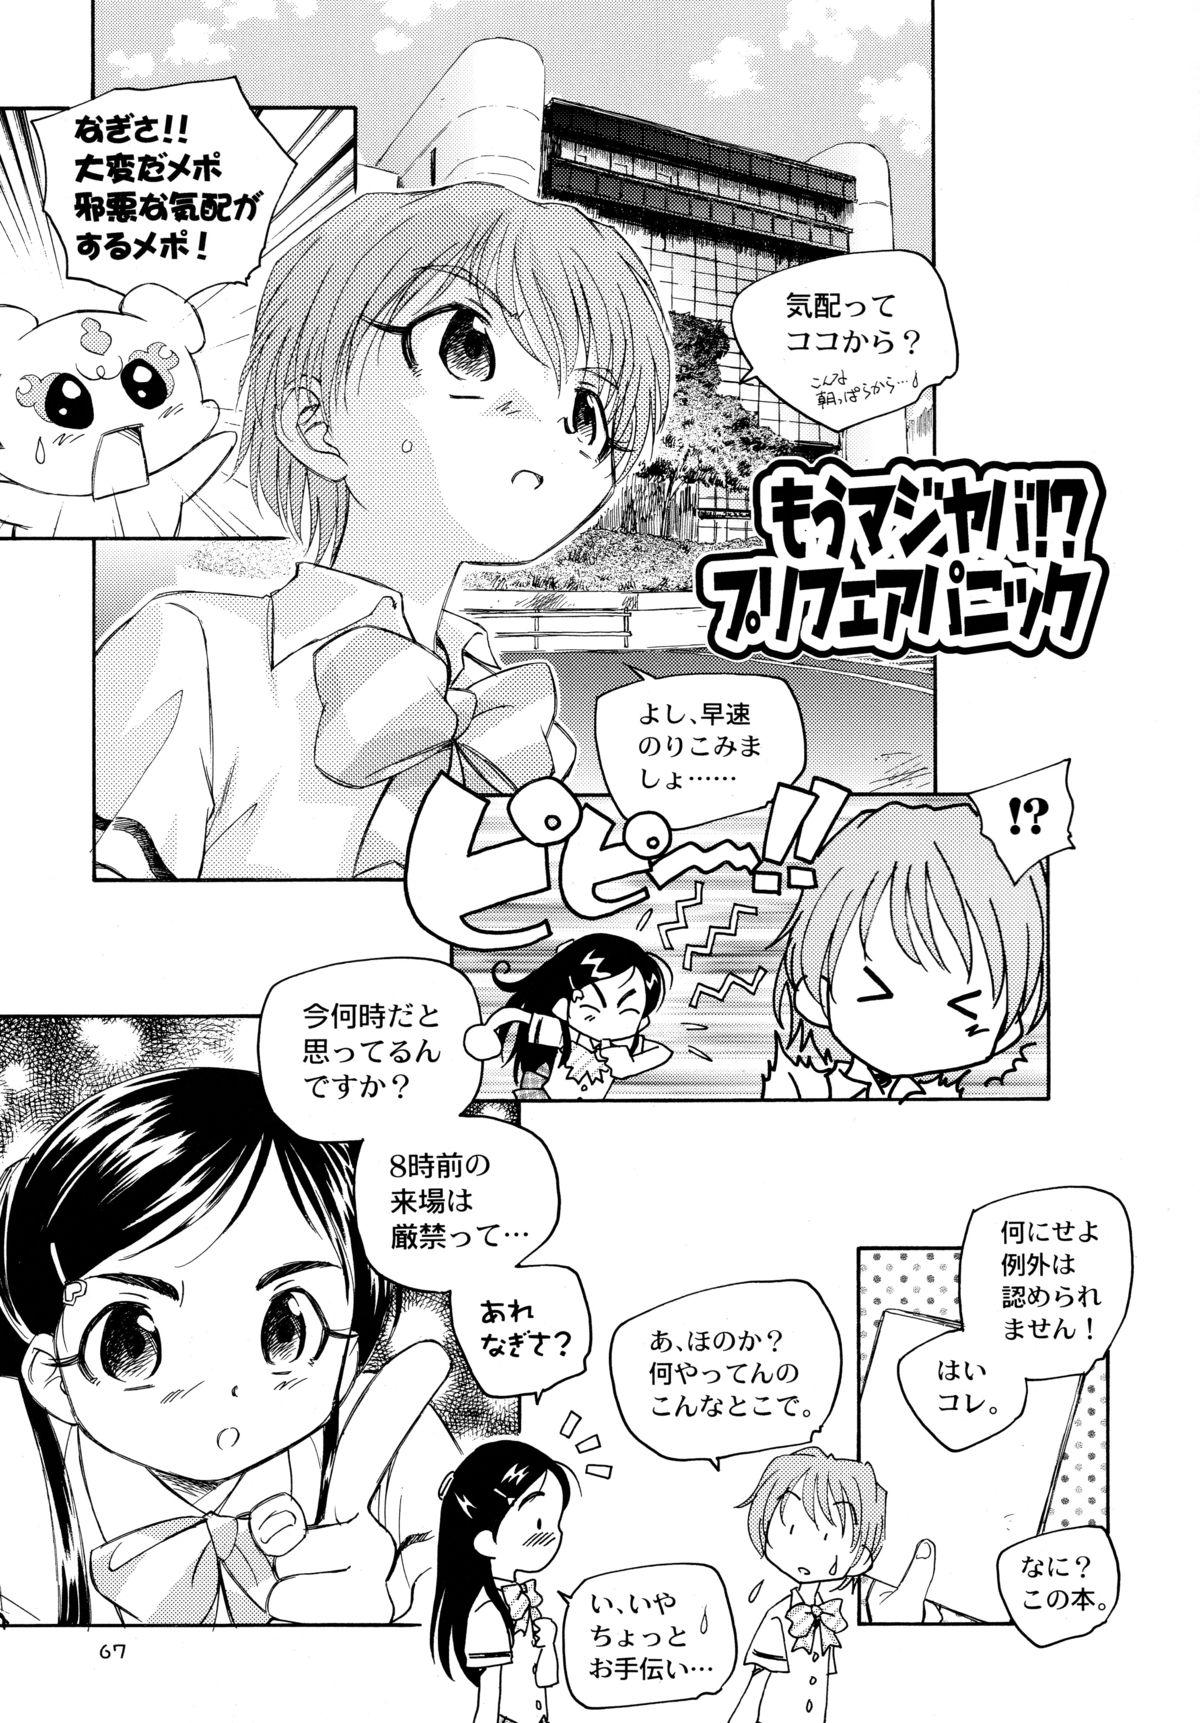 Student Yappari NagiHono - Pretty cure Couple - Page 69